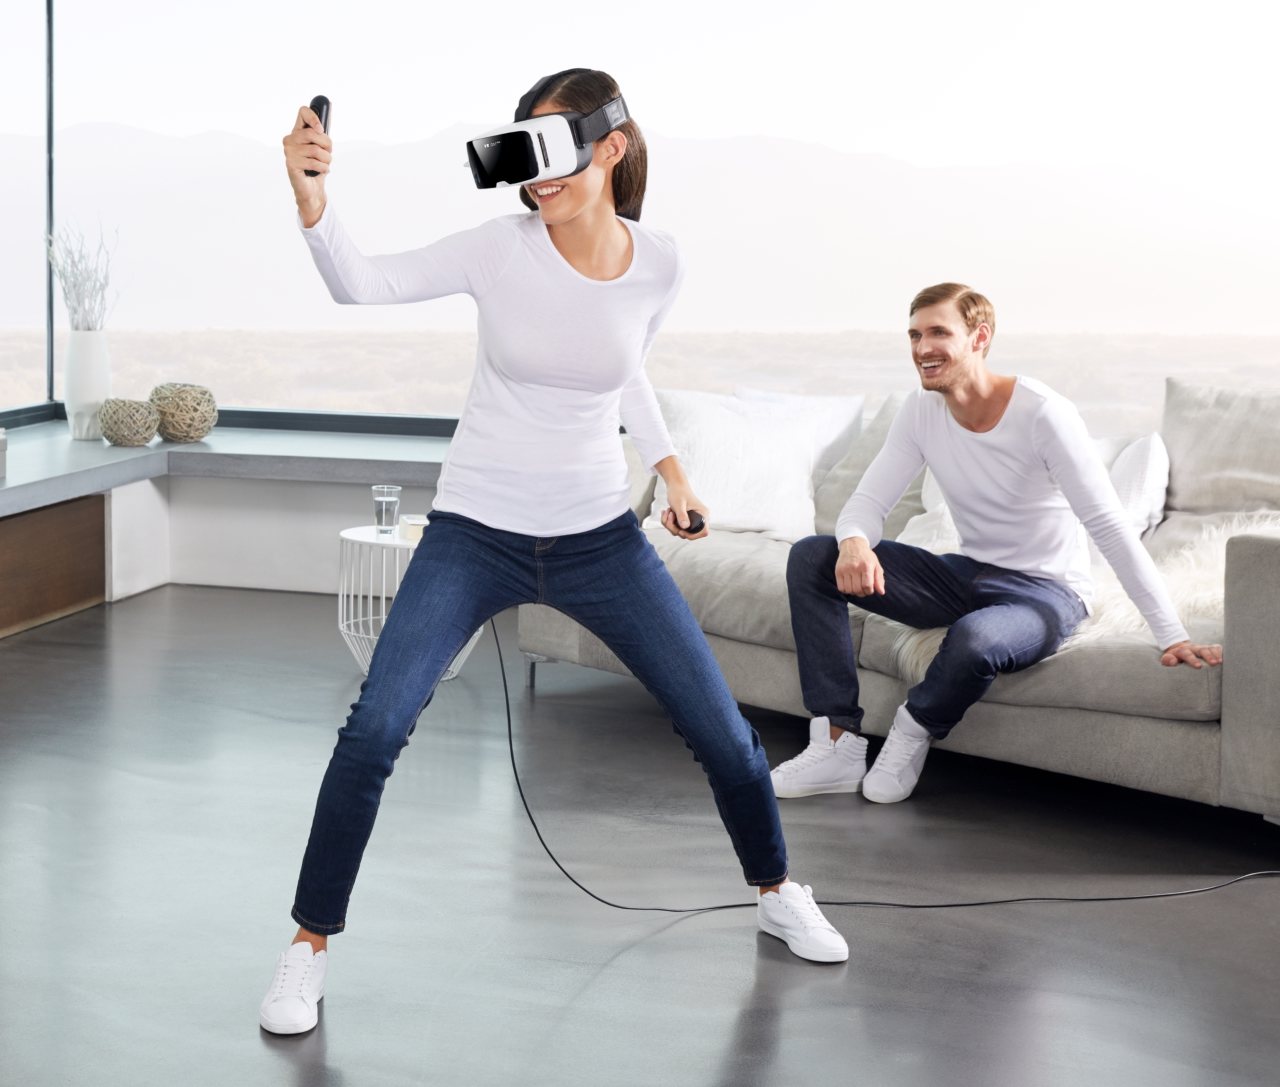 Zeiss VR One Connect: Juegos de virtual de PC funcionando en tu smartphone